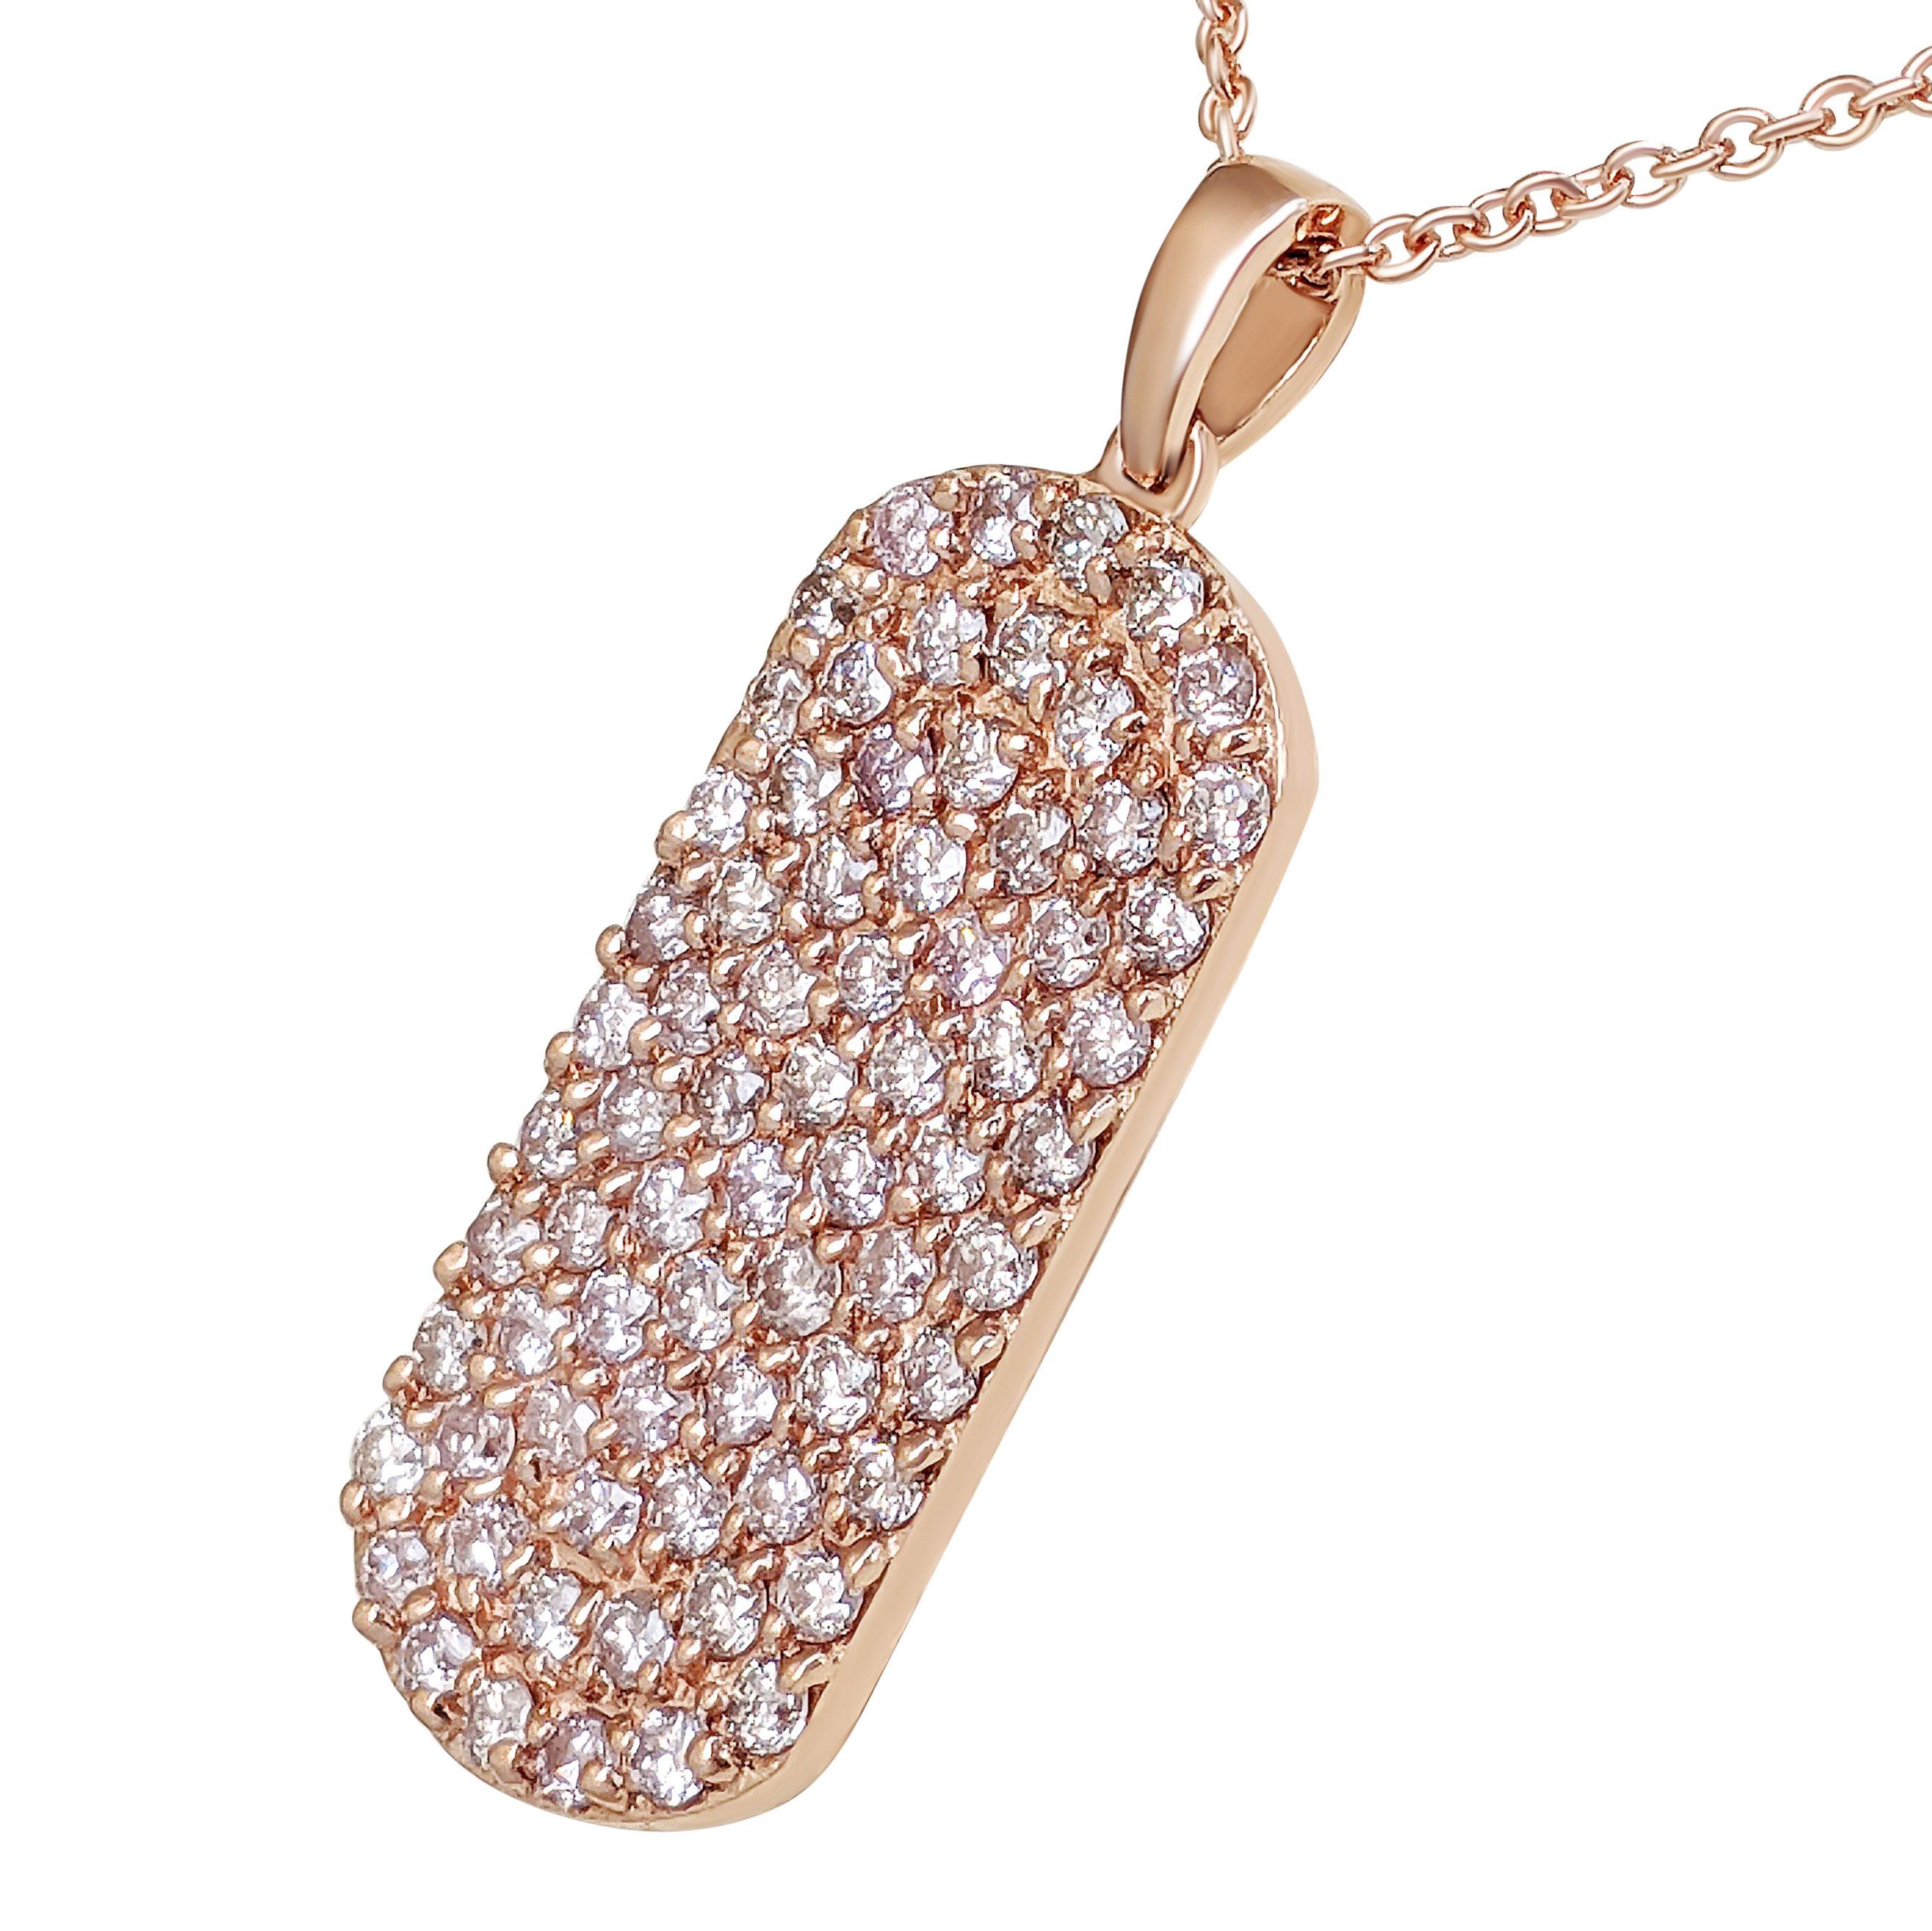 Art Deco NO RESERVE! 1.10Ct Fancy Pink Diamond 14 kt. Gold Pendant Necklace